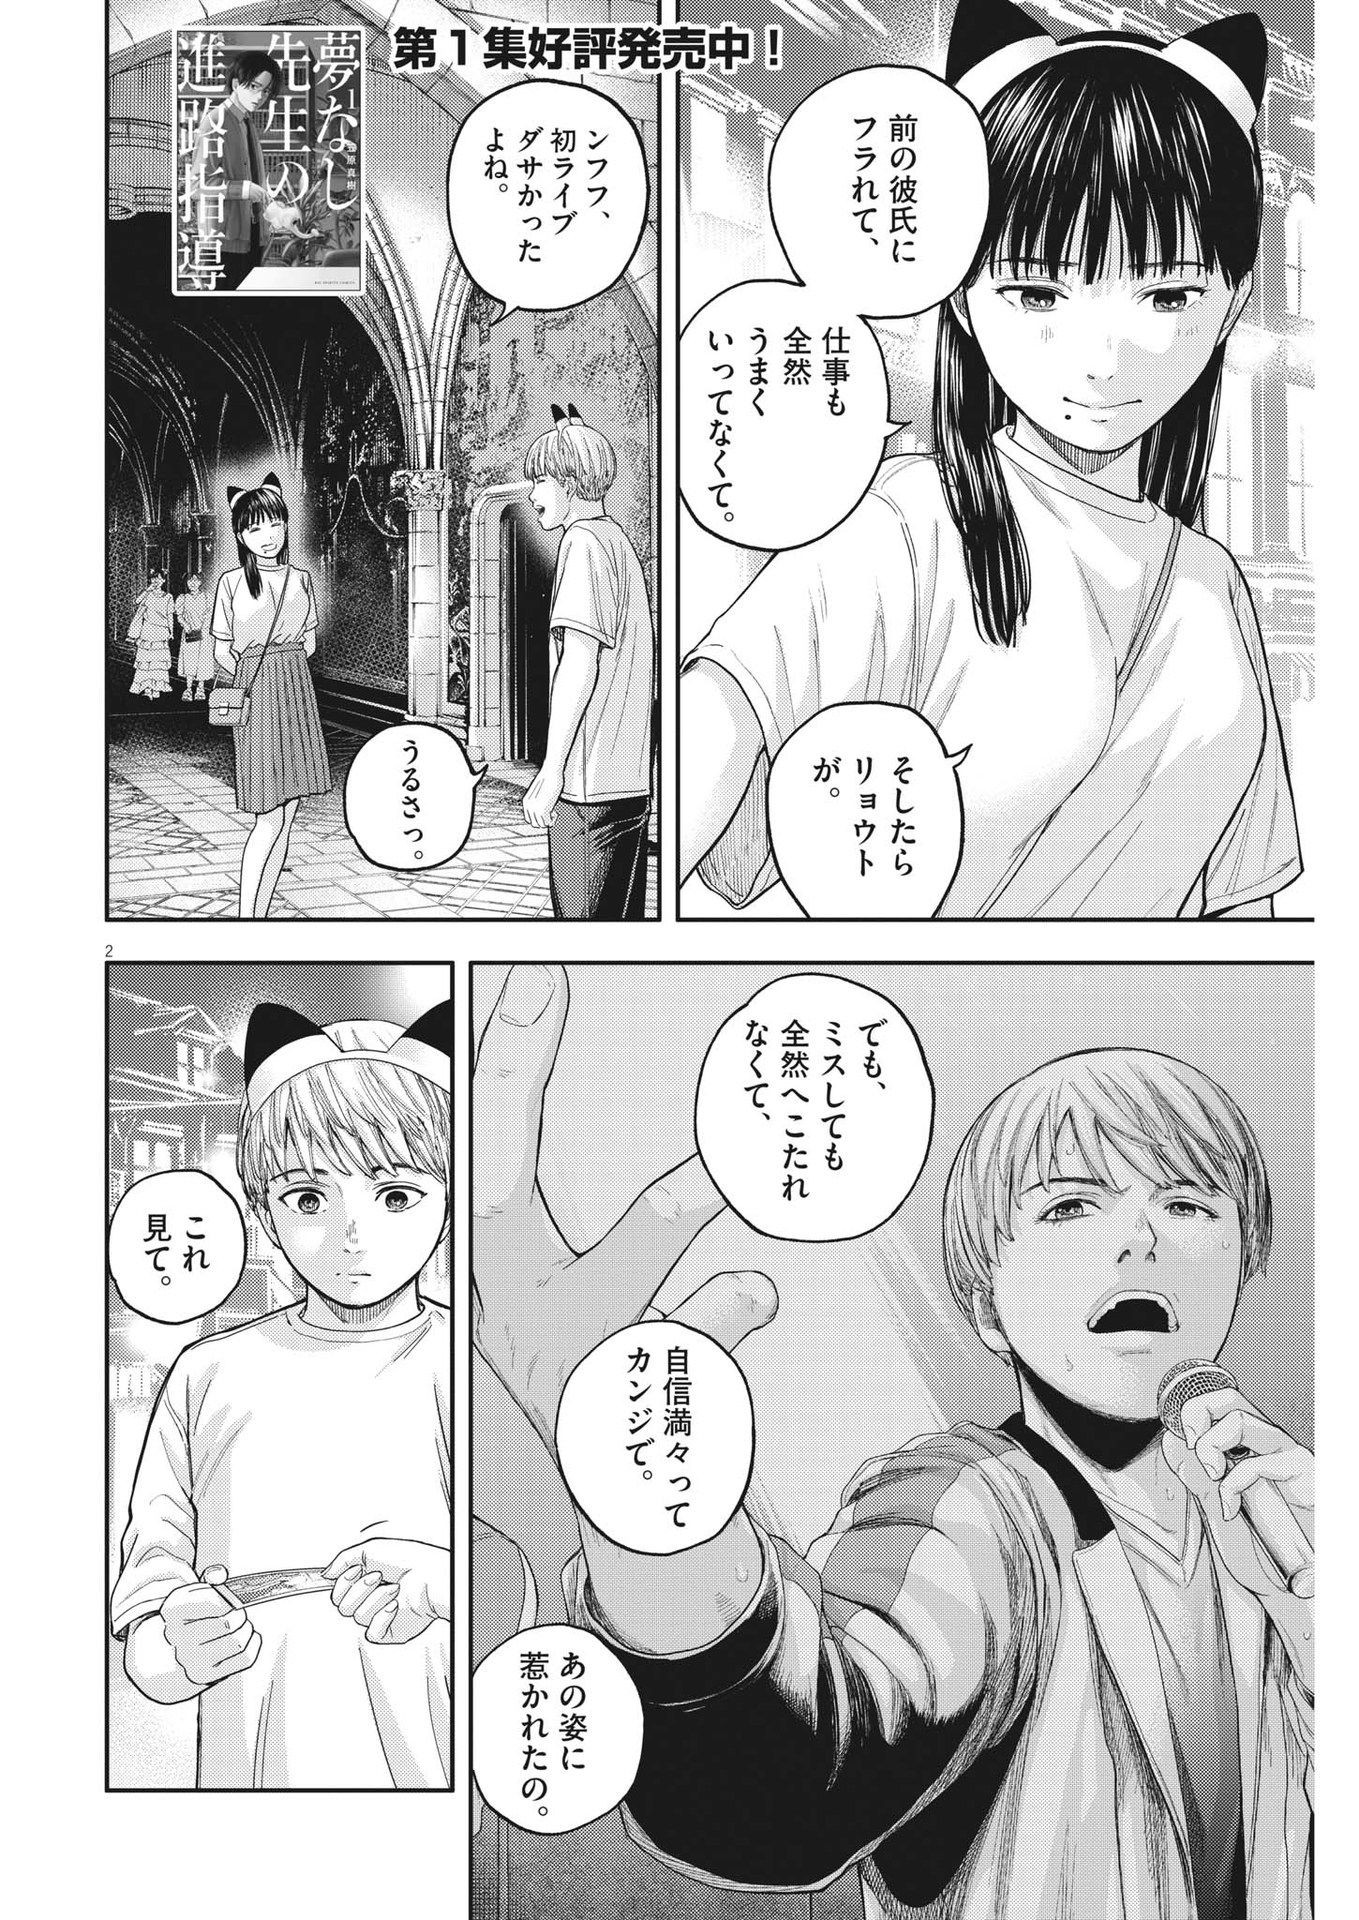 Yumenashi-sensei no Shinroshidou - Chapter 15 - Page 2